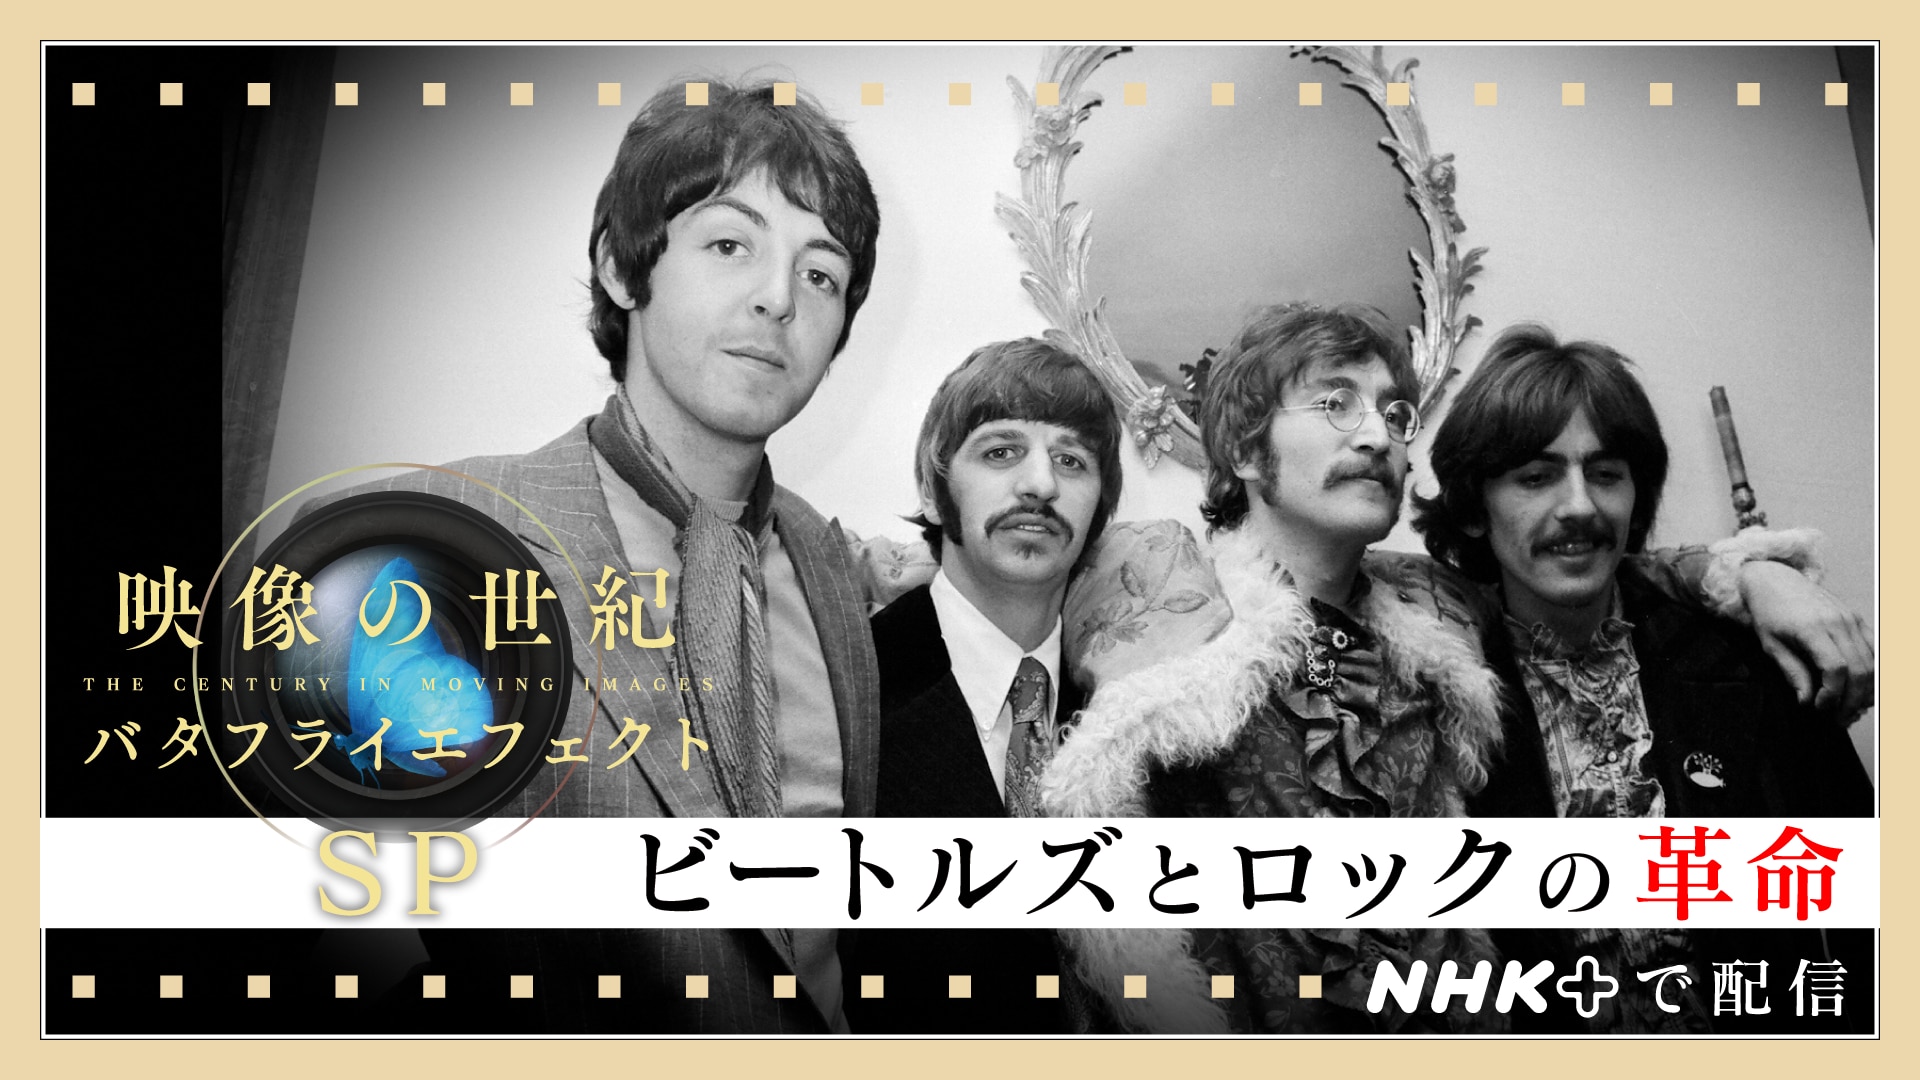 ビートルズとロックの革命 - 映像の世紀バタフライエフェクト - NHK